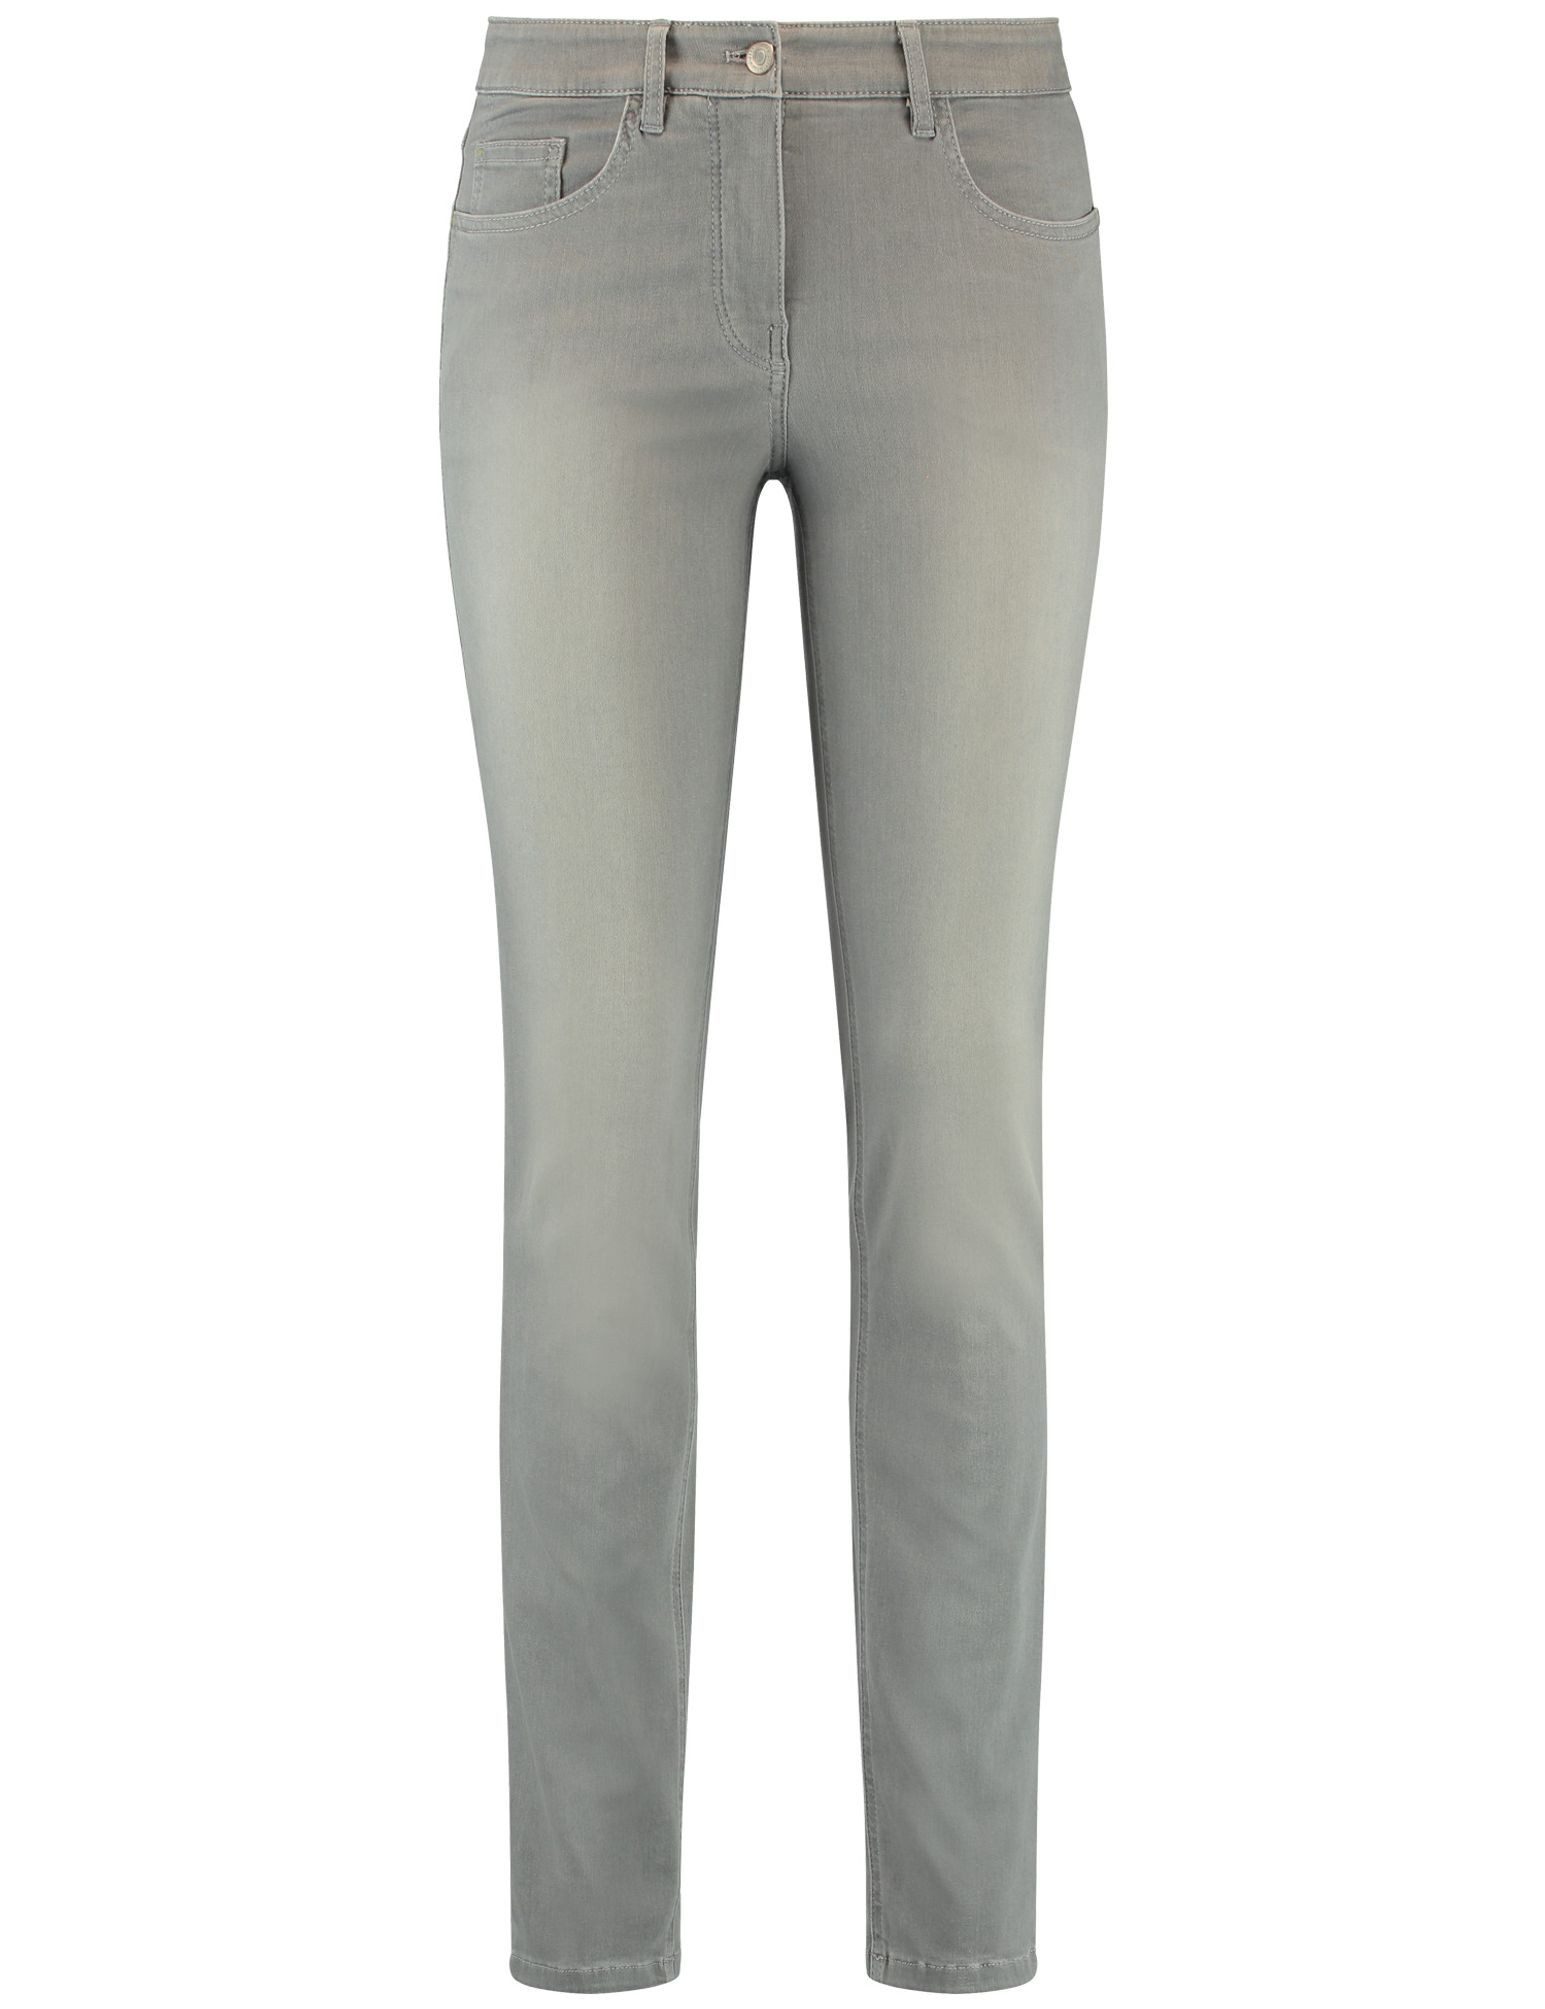 GERRY WEBER 5-Pocket-Jeans 925051-67830 Stretchjeans